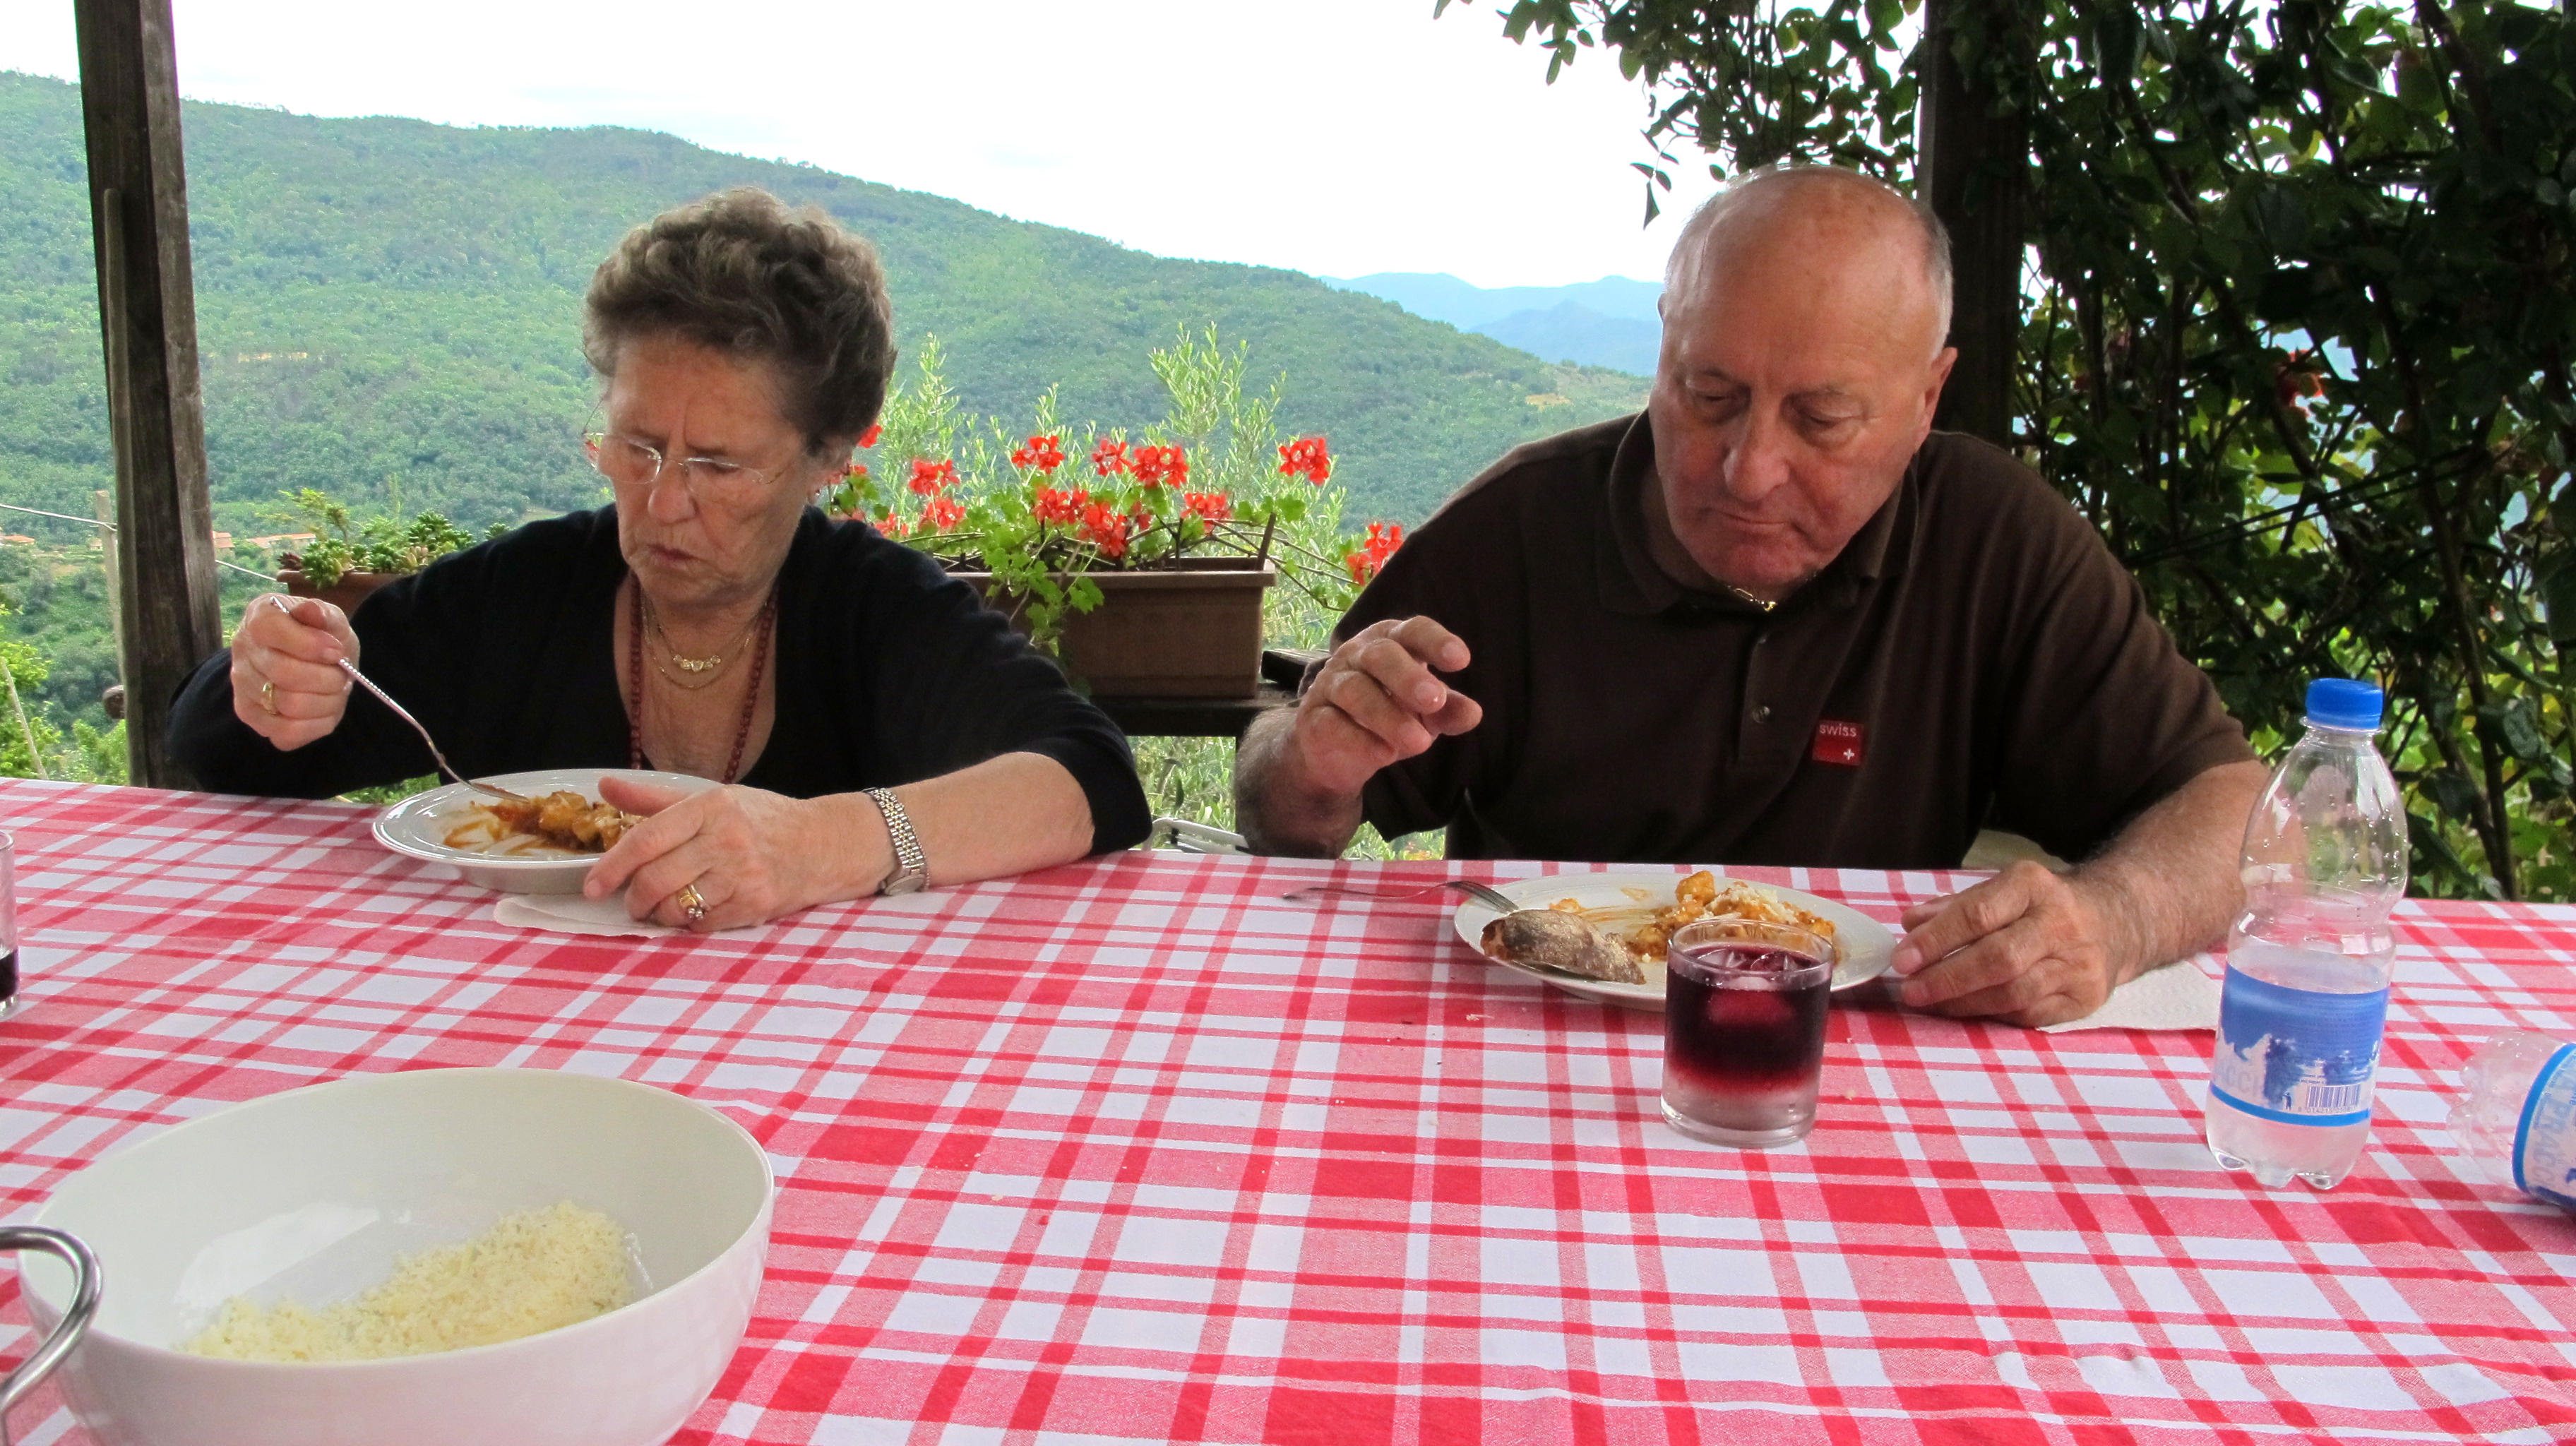 Nonna and Nonno enjoy their gnocchi. 